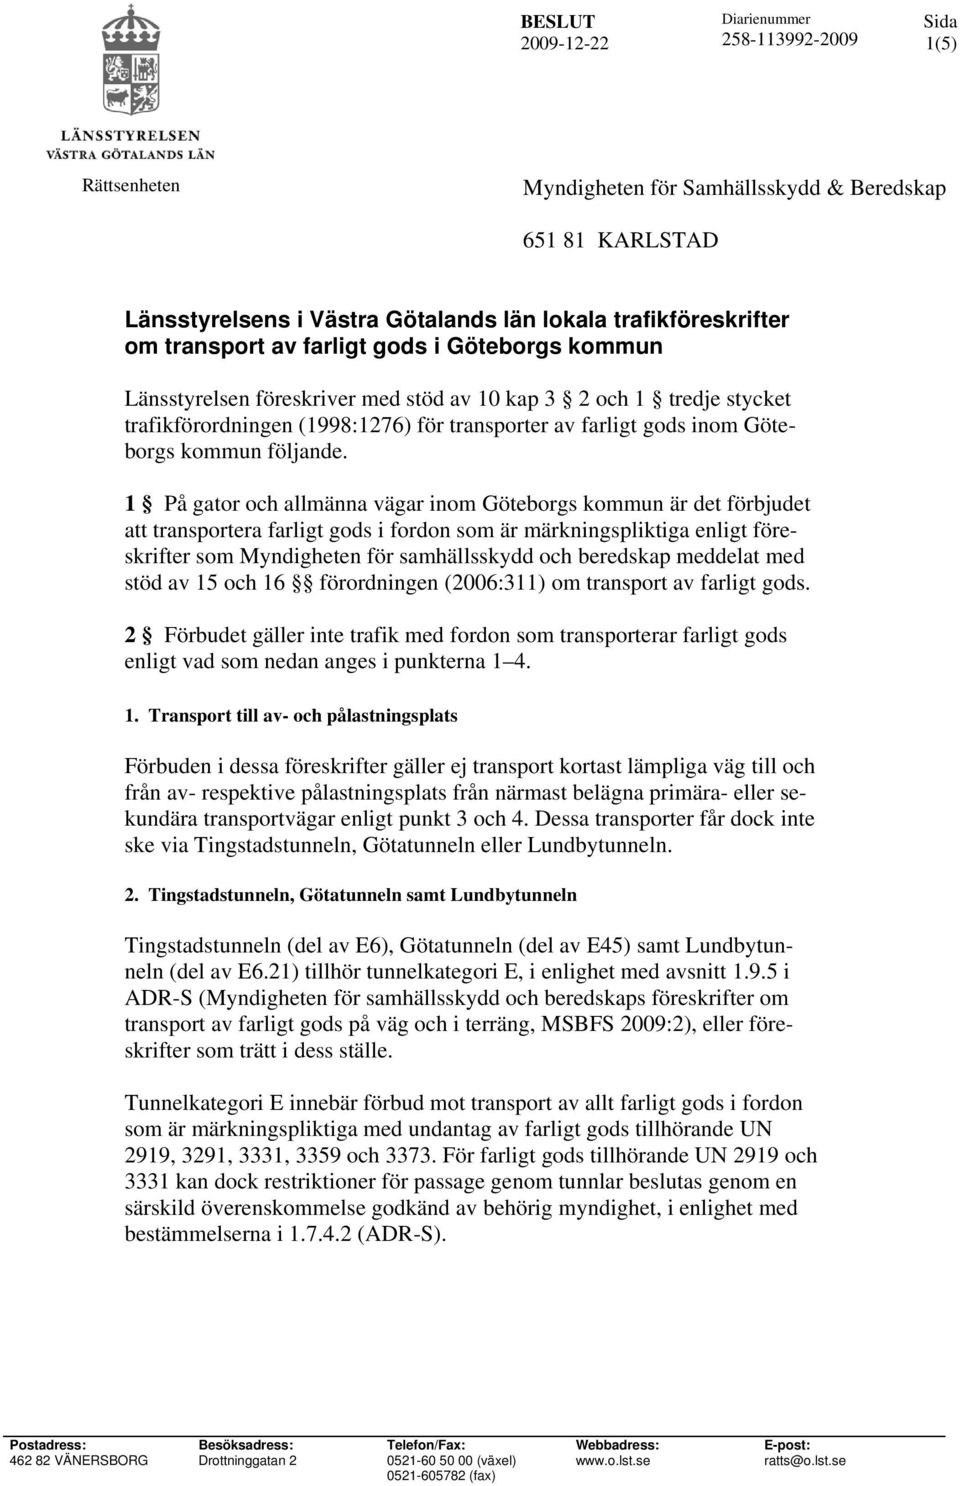 1 På gator och allmänna vägar inom Göteborgs kommun är det förbjudet att transportera farligt gods i fordon som är märkningspliktiga enligt föreskrifter som Myndigheten för samhällsskydd och